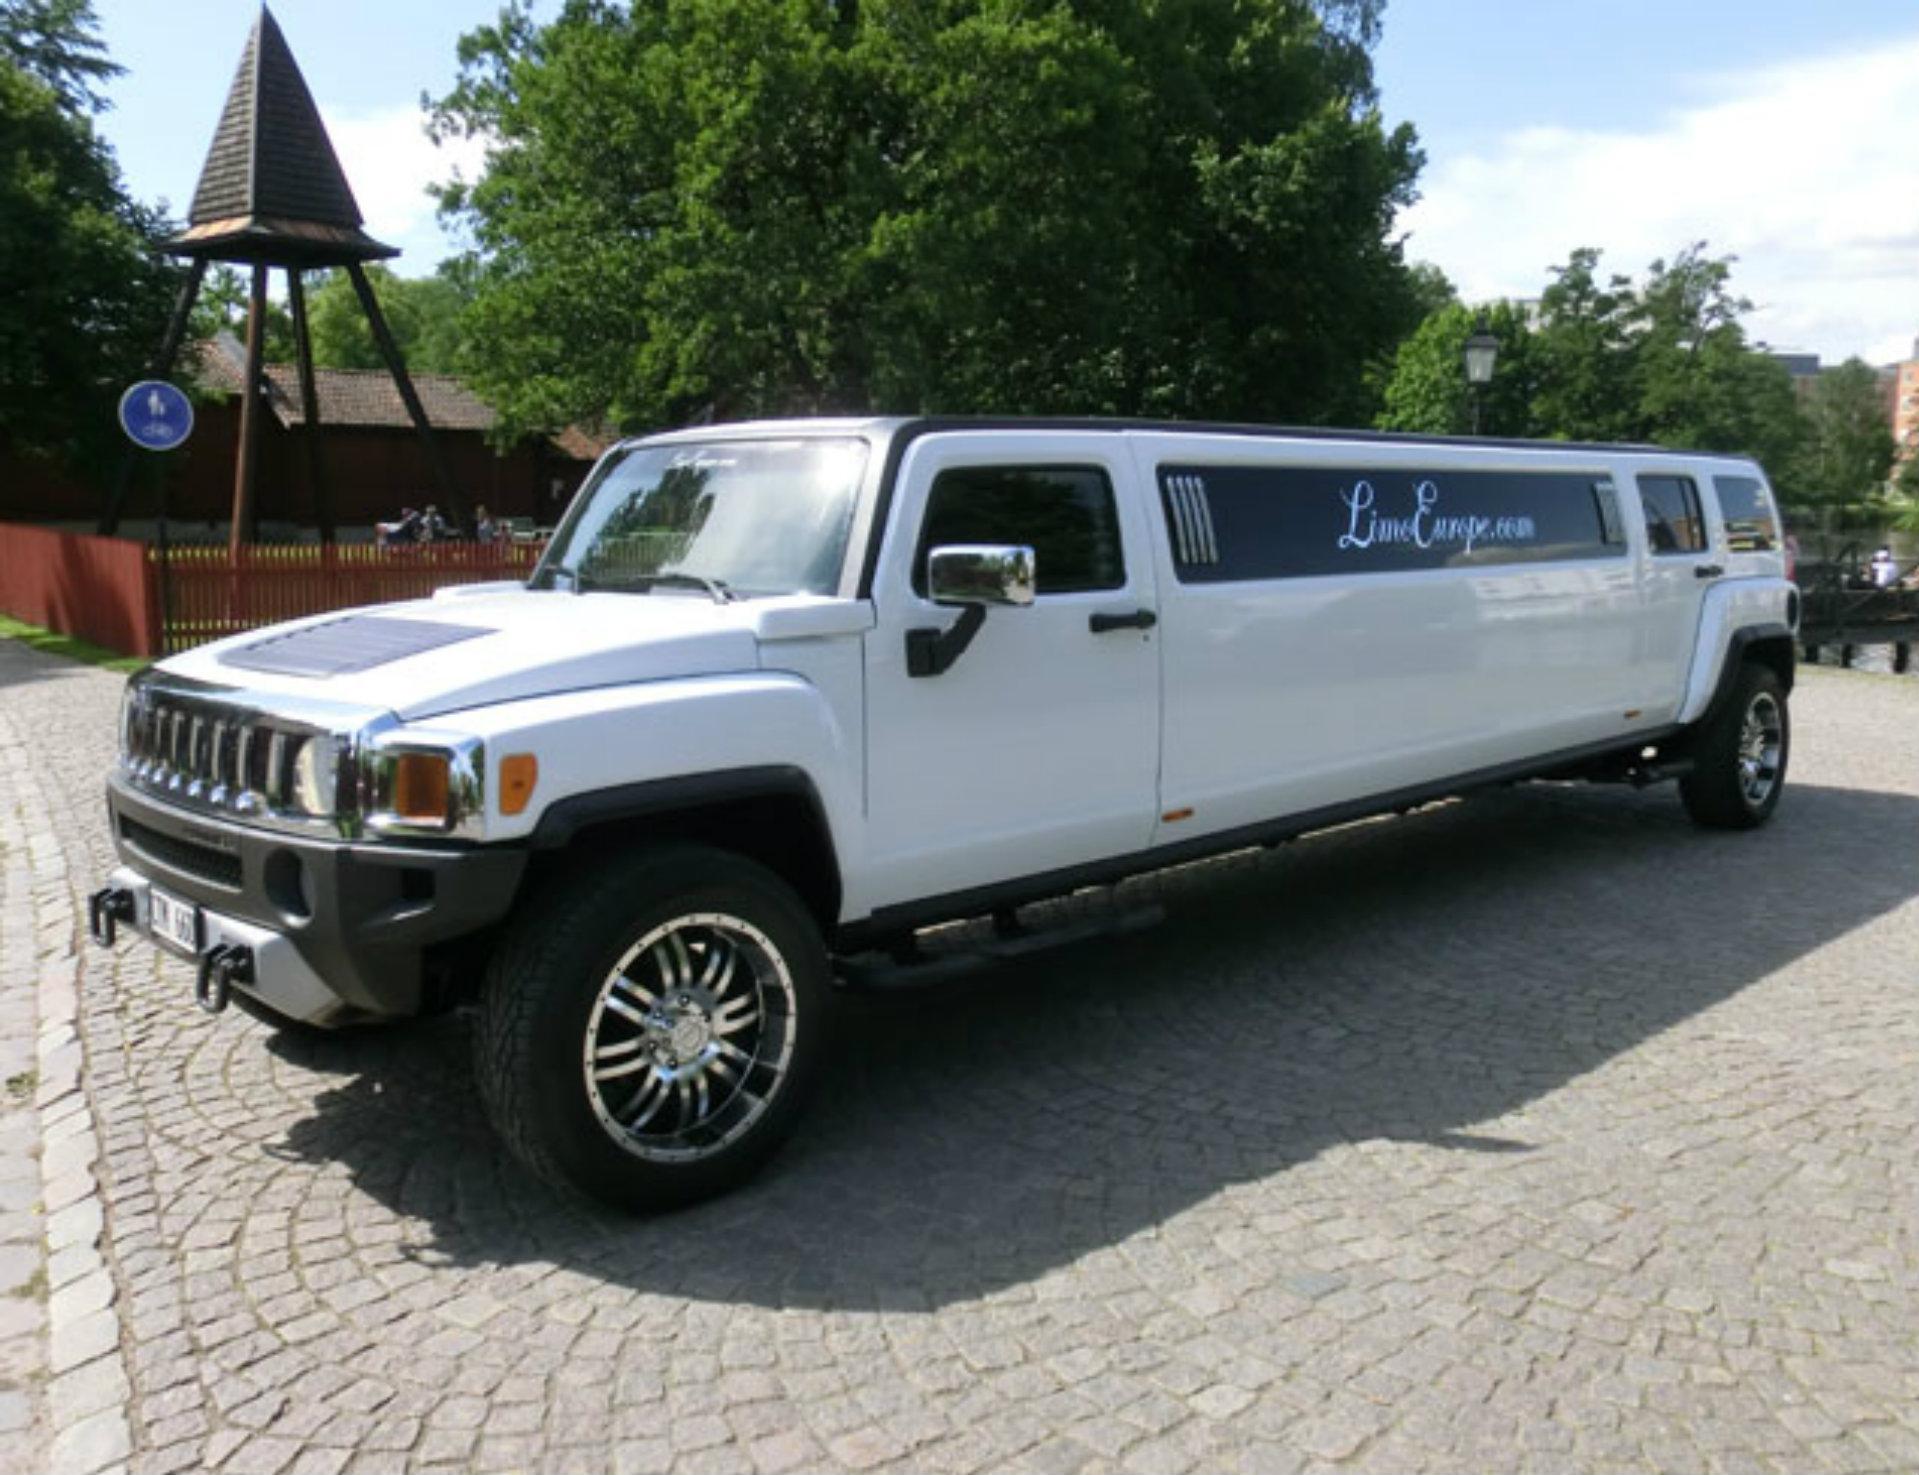 Tour en Hummer H2 stretch limousine 